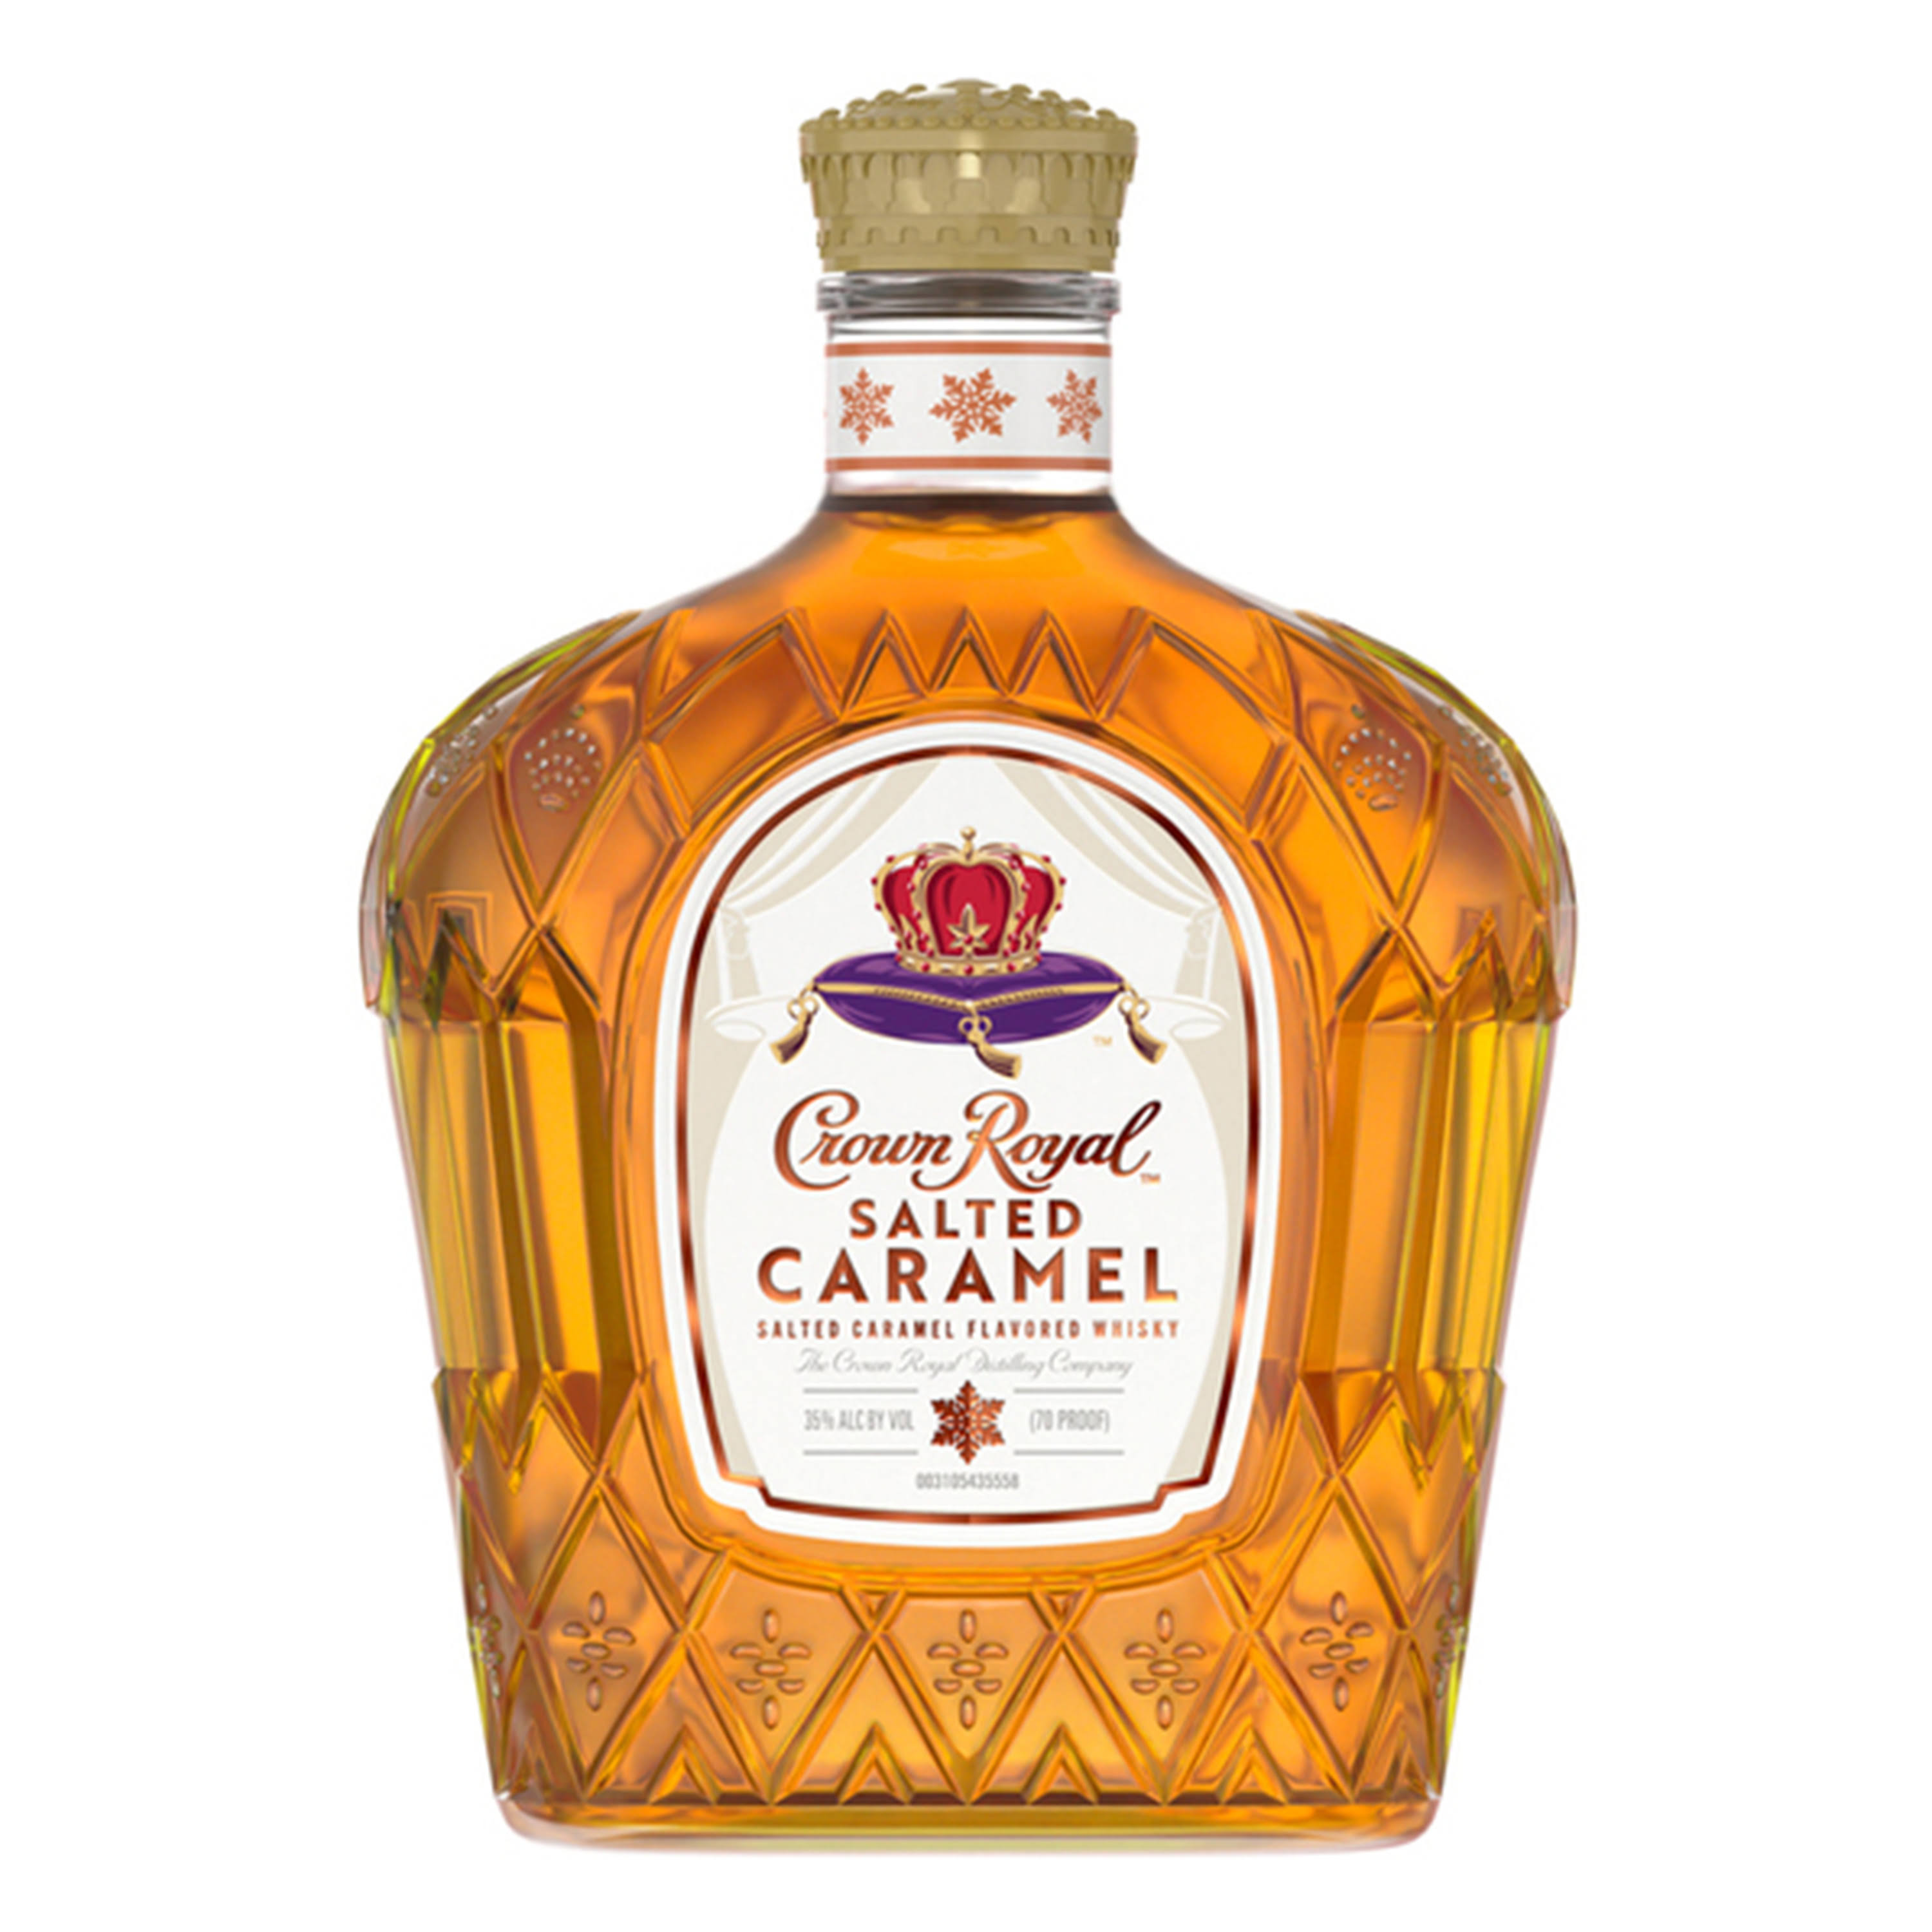 Crown Royal Salted Caramel - 750ml